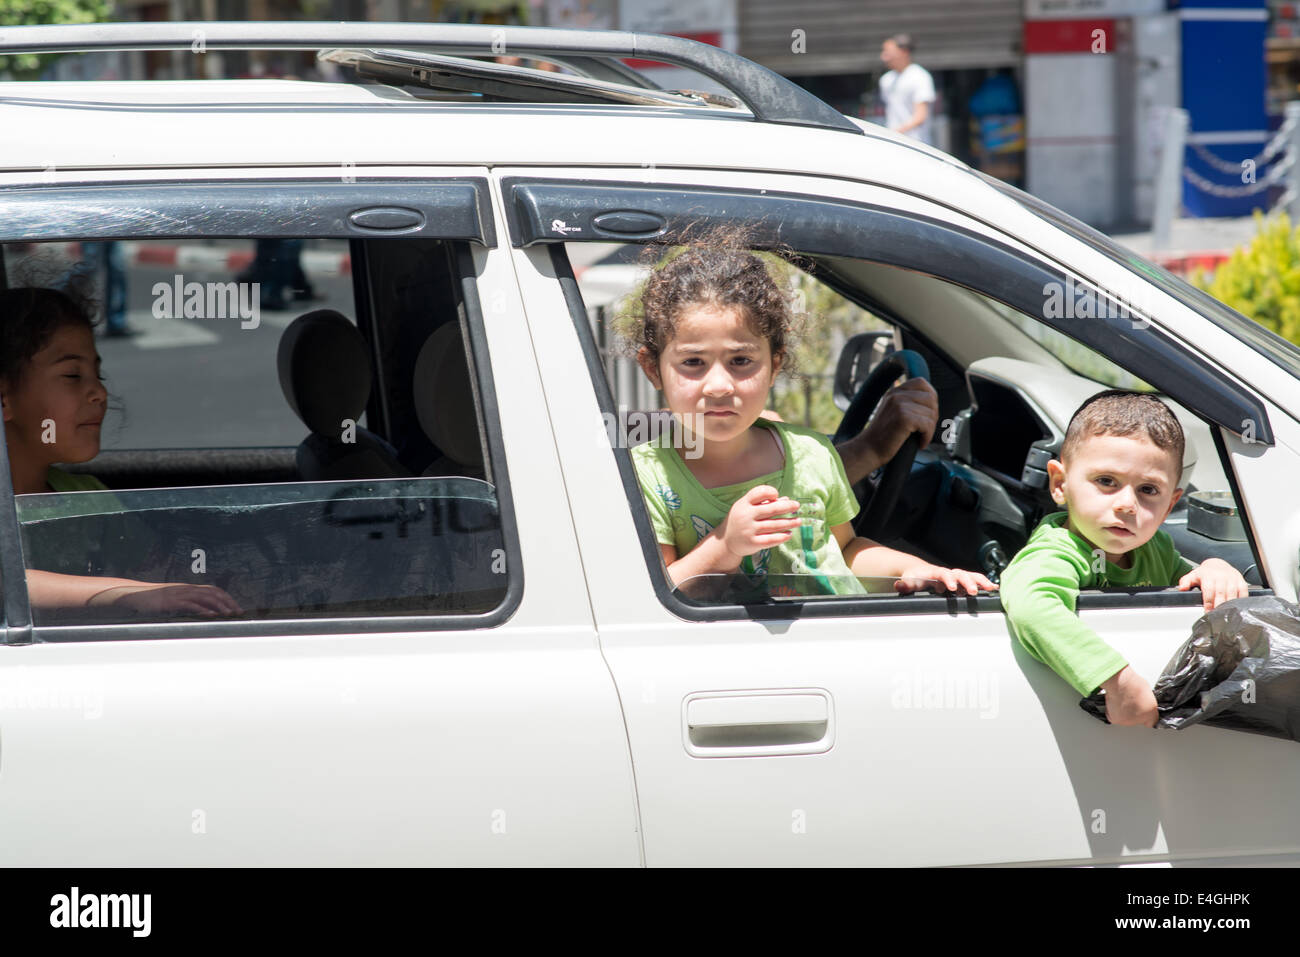 Ramallah. 10 juillet, 2014. Deux jeunes enfants palestiniens regarde par la fenêtre d'une voiture qui passait dans le centre commercial de la place Al-Manara. Les manifestations ont été éclatent dans la région en réaction au récent conflit avec Israël. Kevin Su/Alamy Live News Banque D'Images